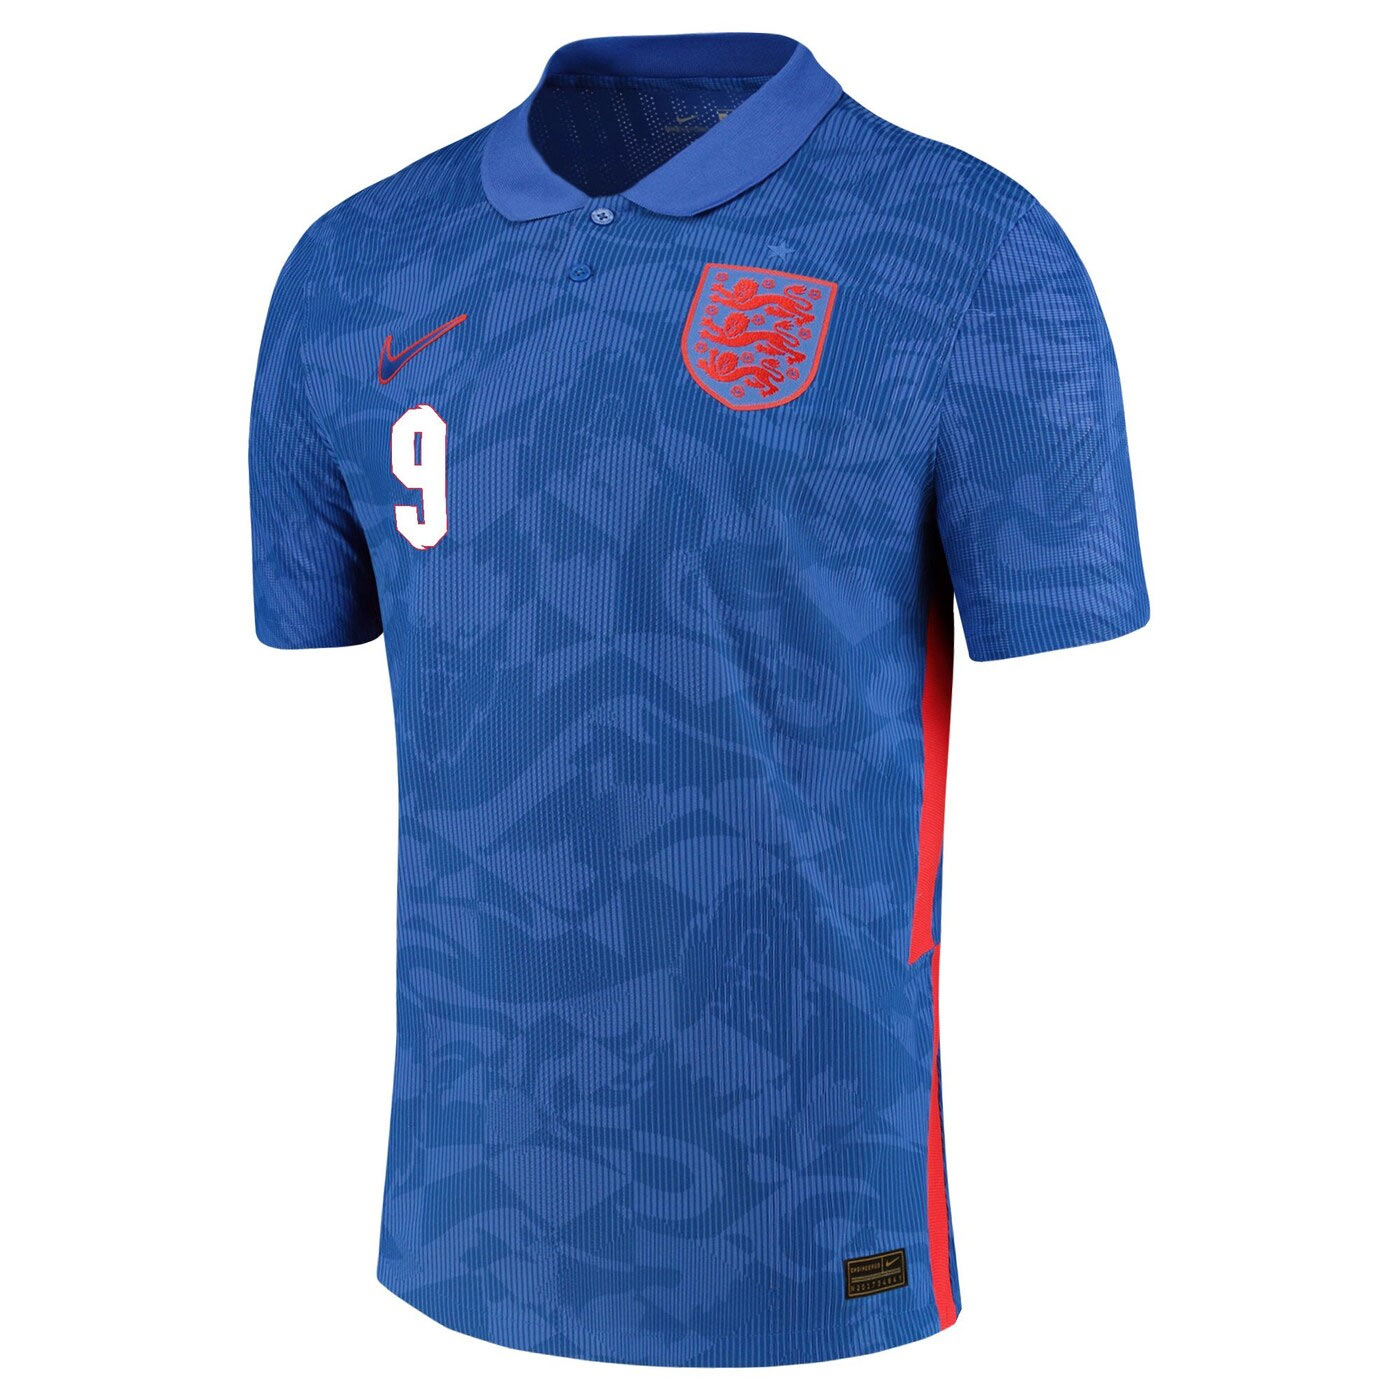 Maglie Inghilterra 2020-2021 Nike, il nuovo look dei 3 Leoni